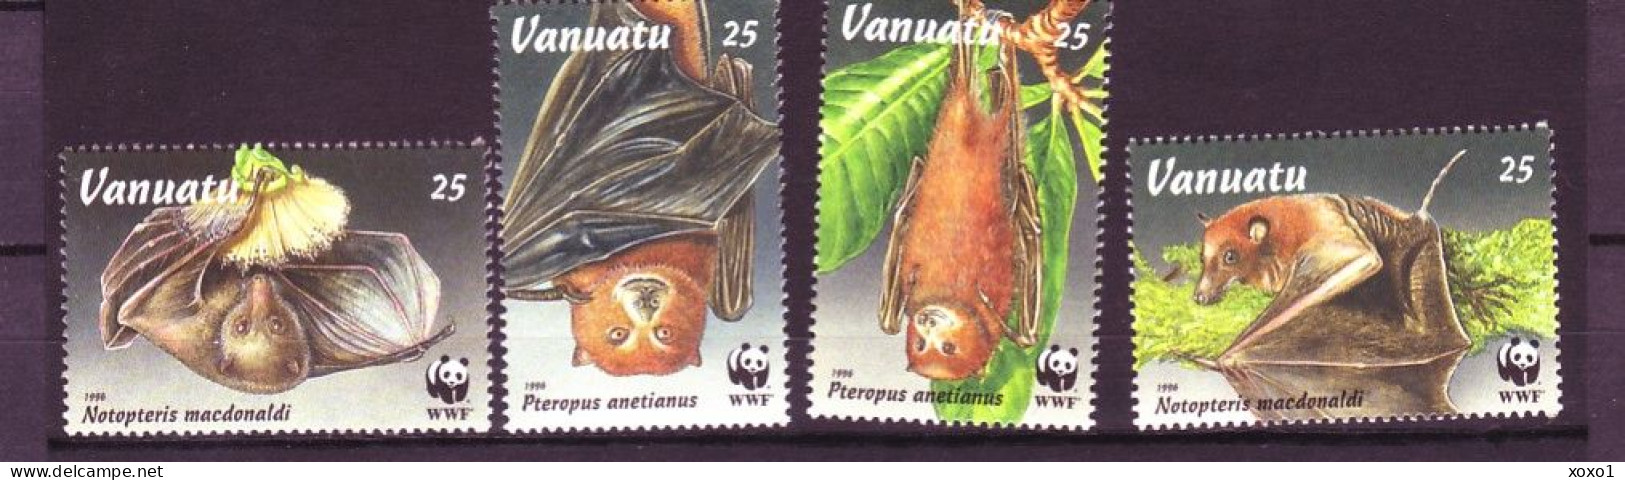 Vanuatu 1996 MiNr. 1004 - 1009 WWF Mammals Bats Insular Flying Fox, Fijian Blossom Bat  4v  MNH** 3.60 € - Fledermäuse